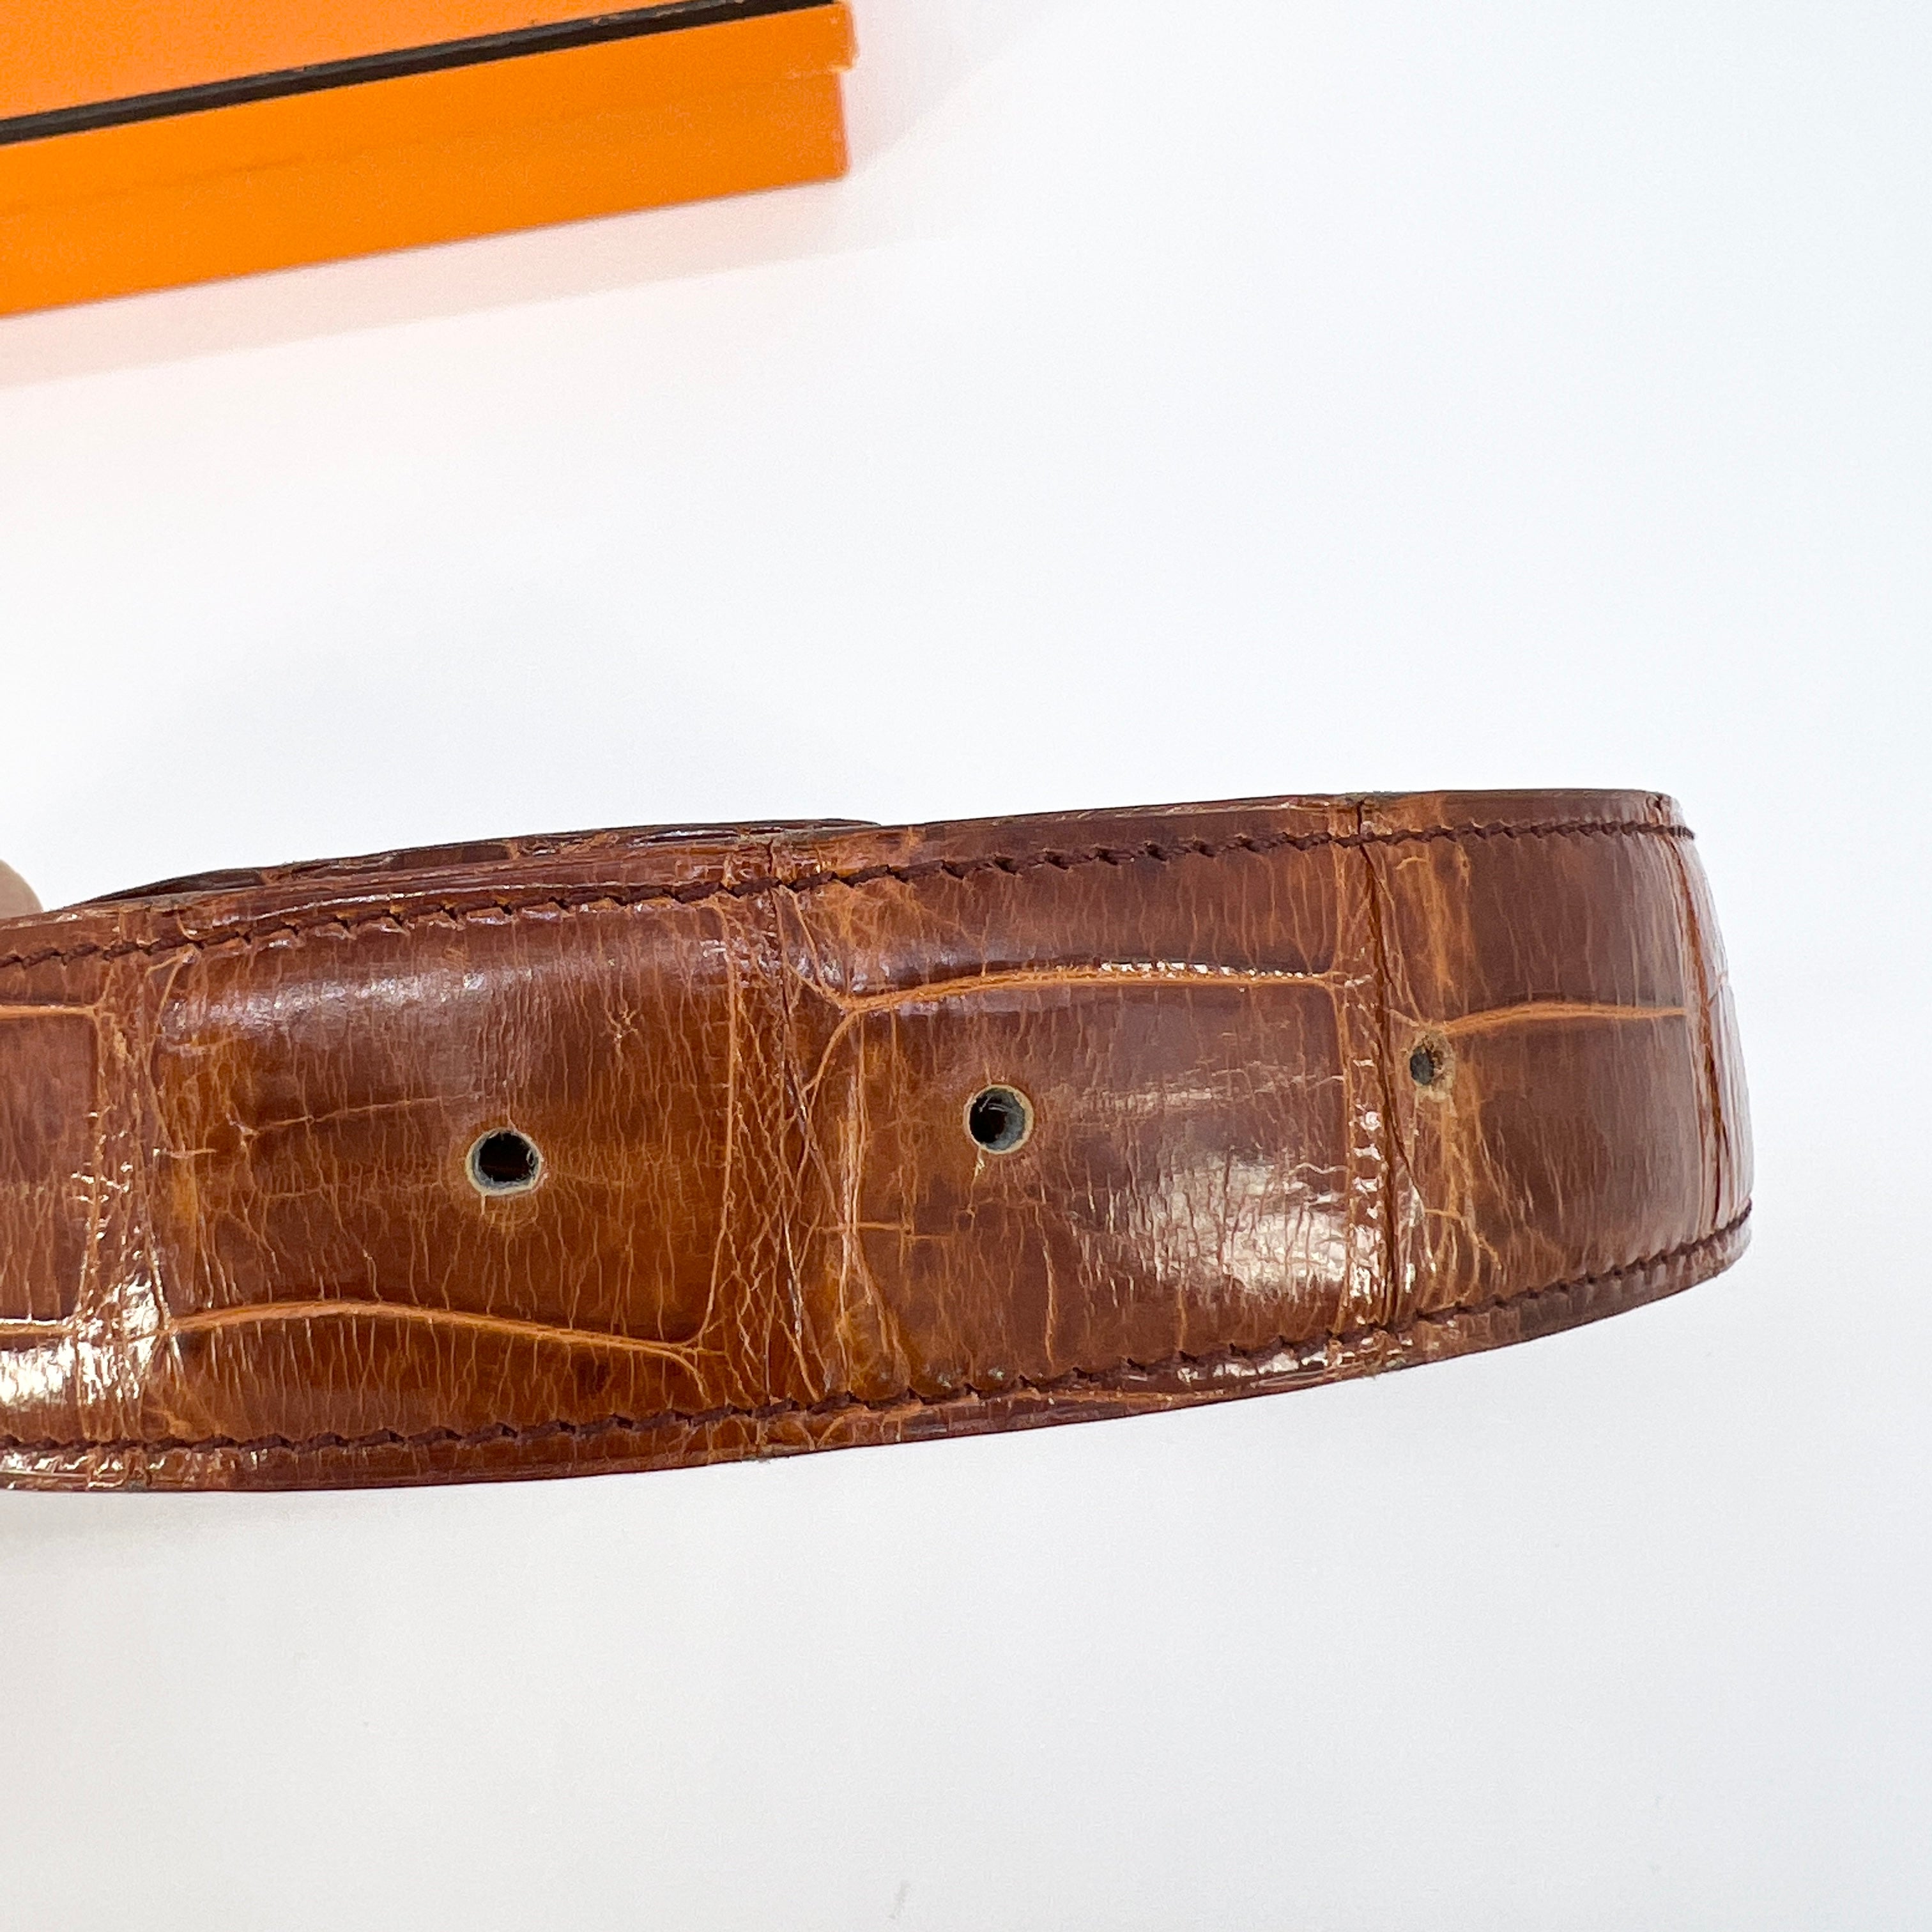 Hermes Style | Matte Alligator Leather Belt (SPECIAL ORDER)